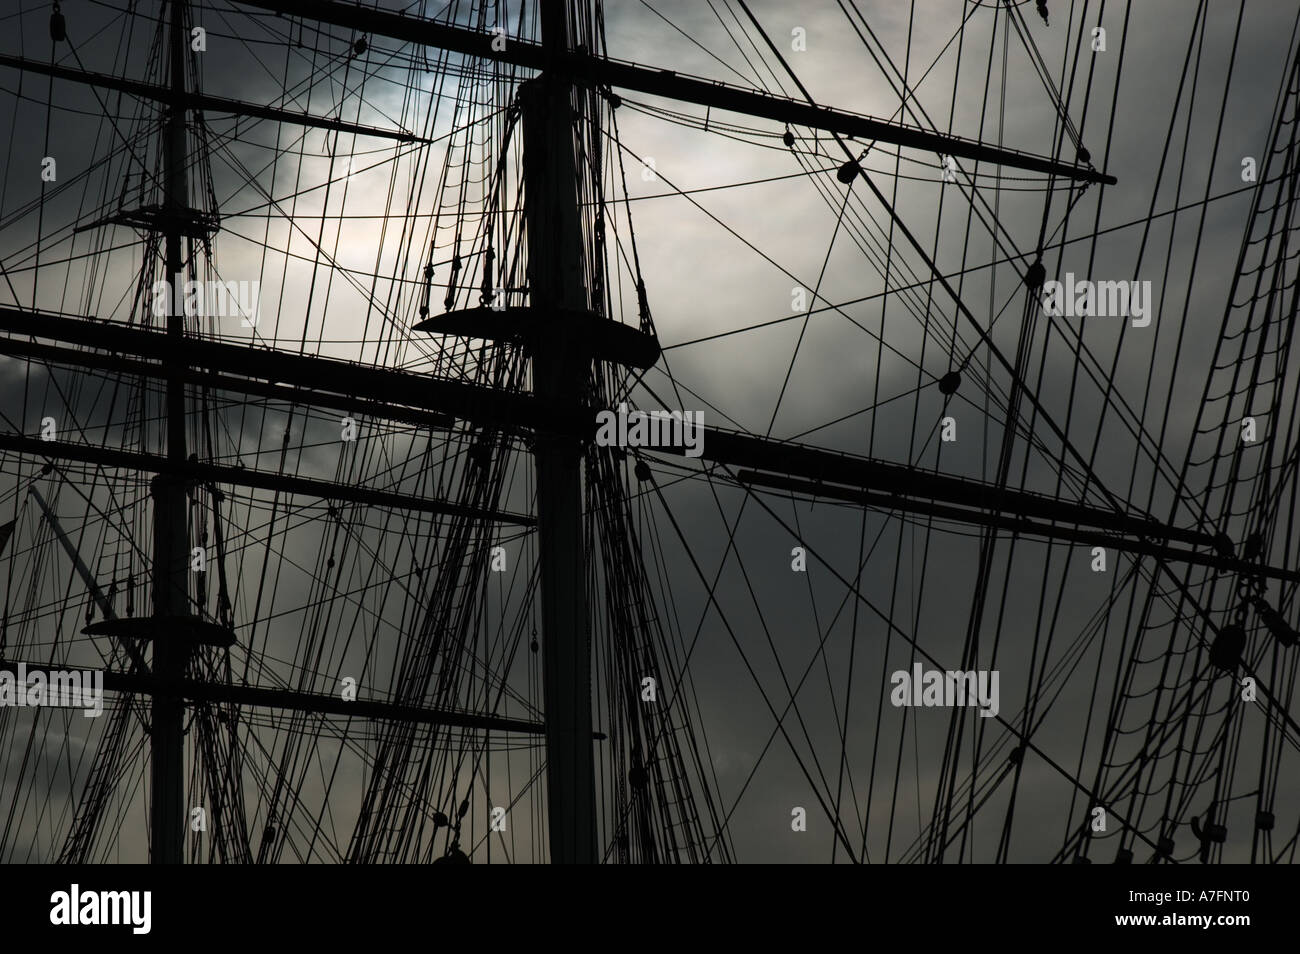 Historical sailing ship rigging and masts Stock Photo